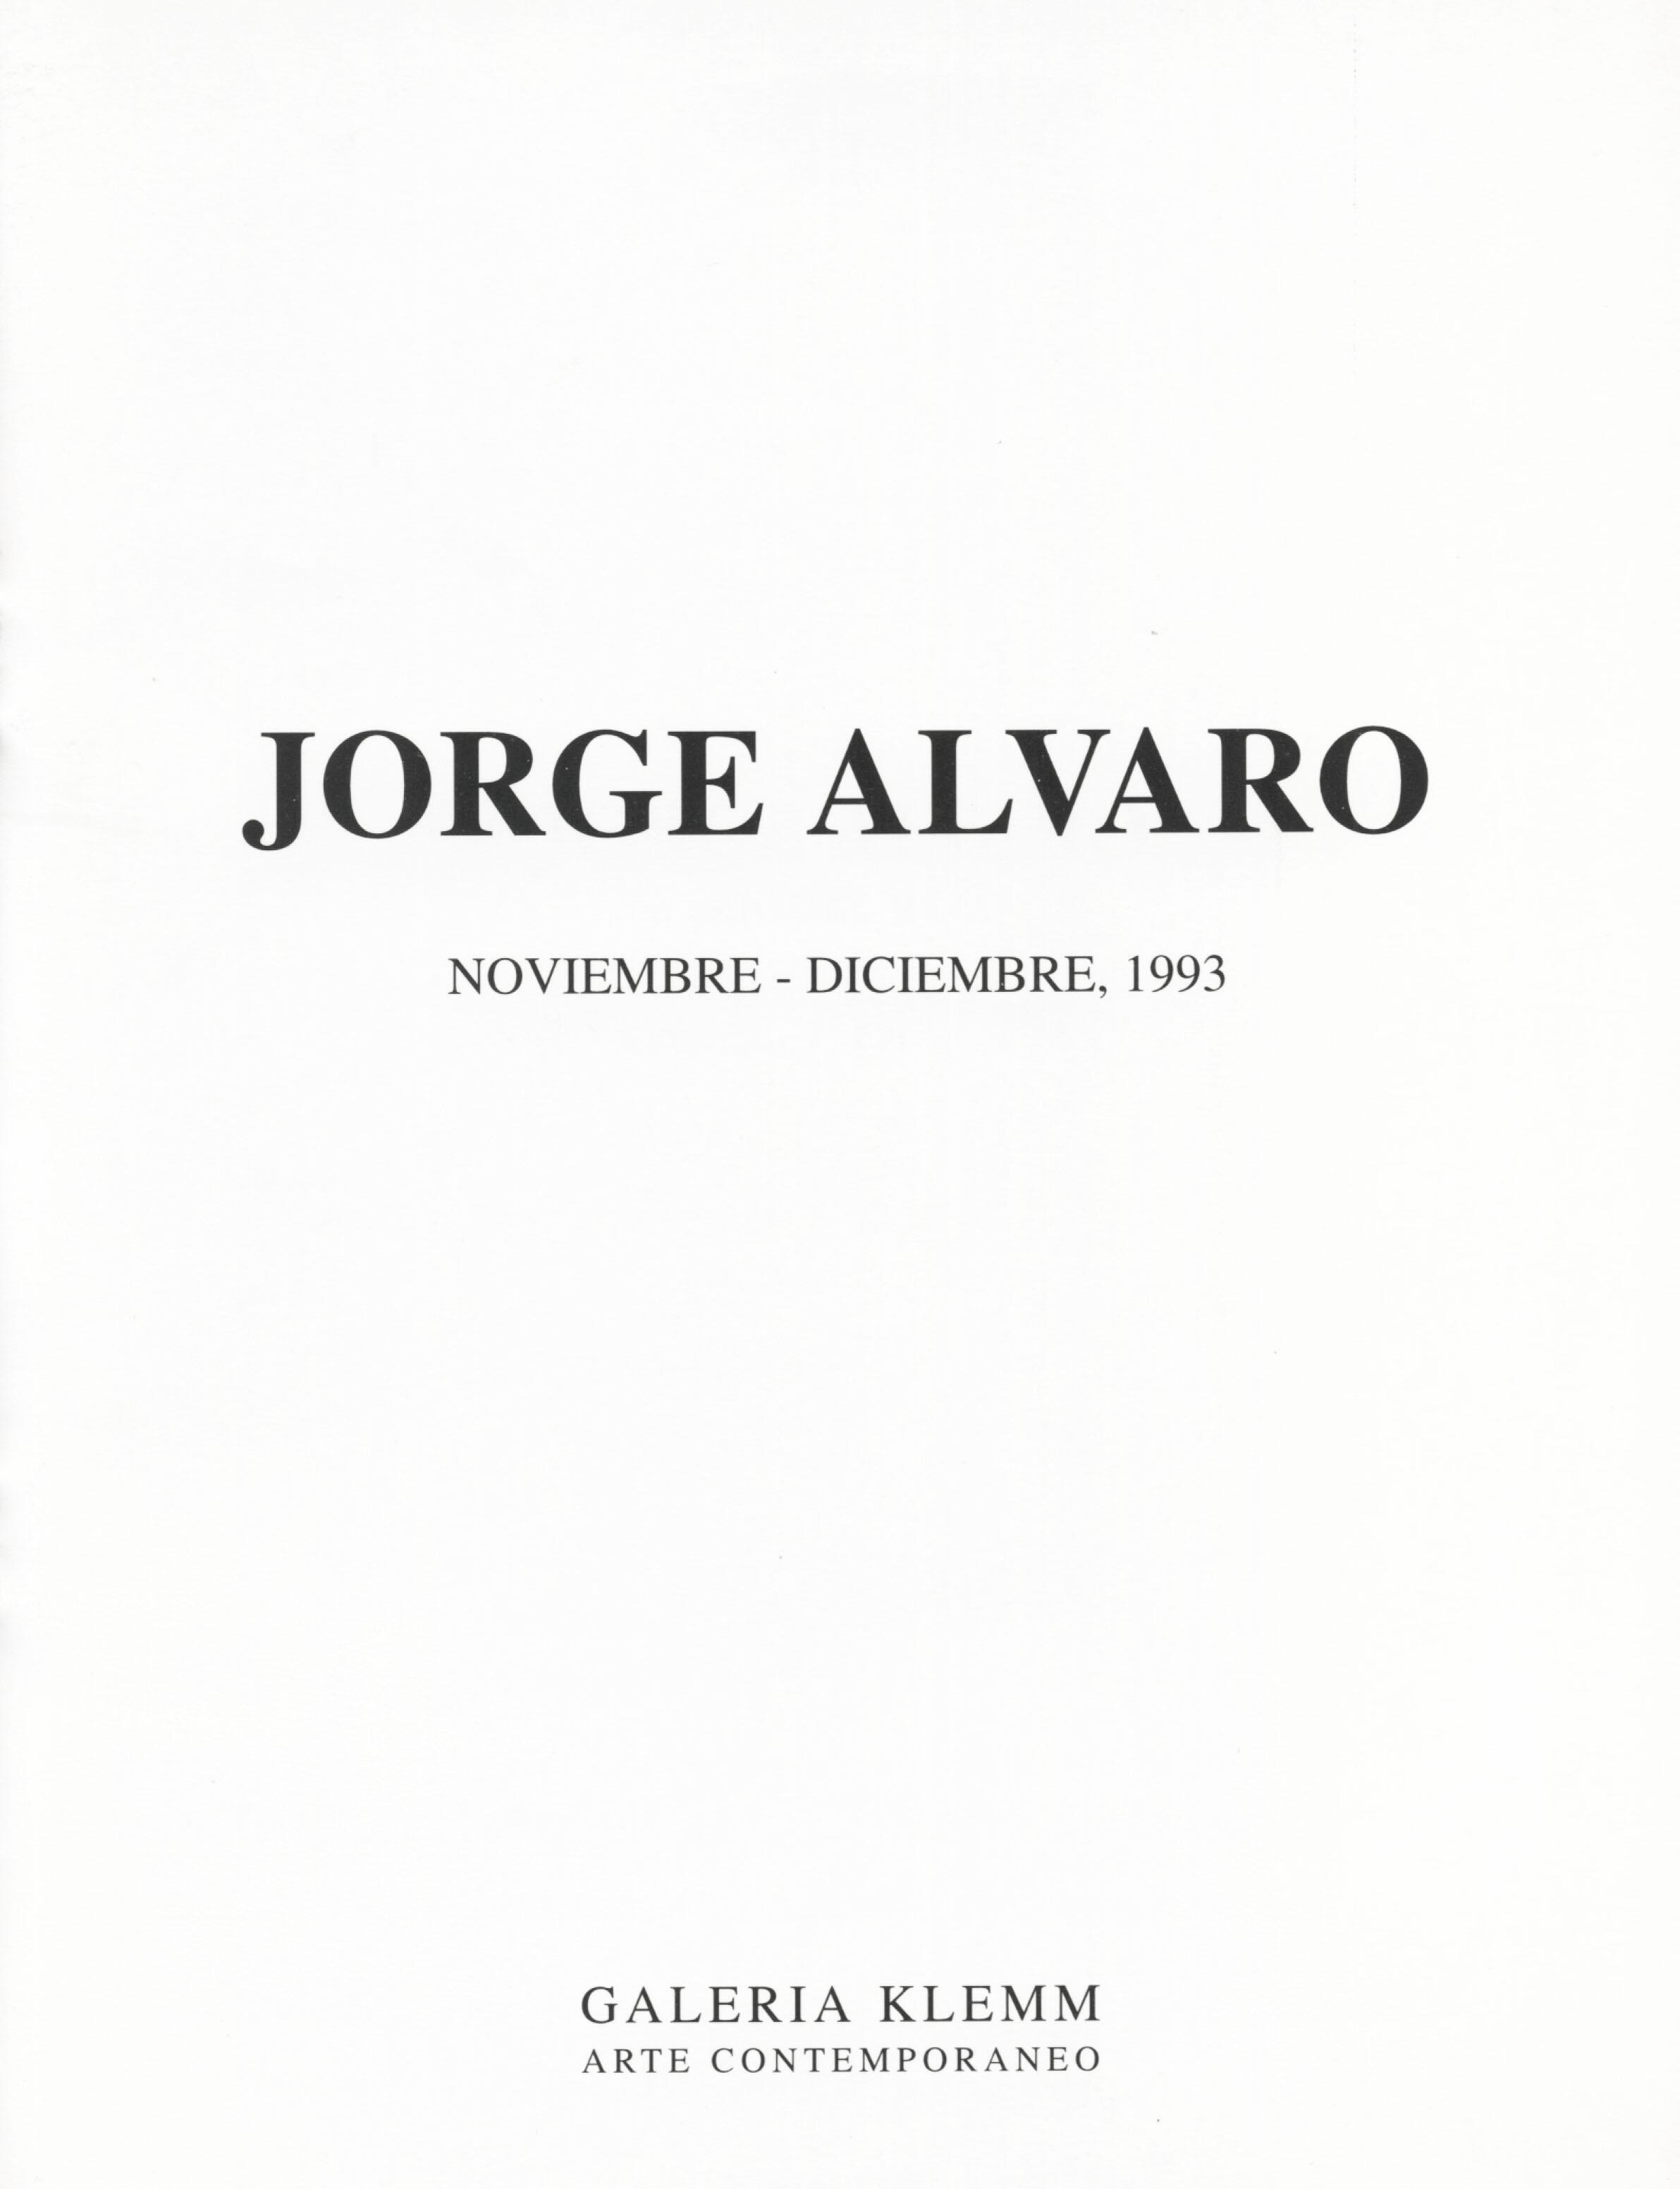 Jorge Álvaro